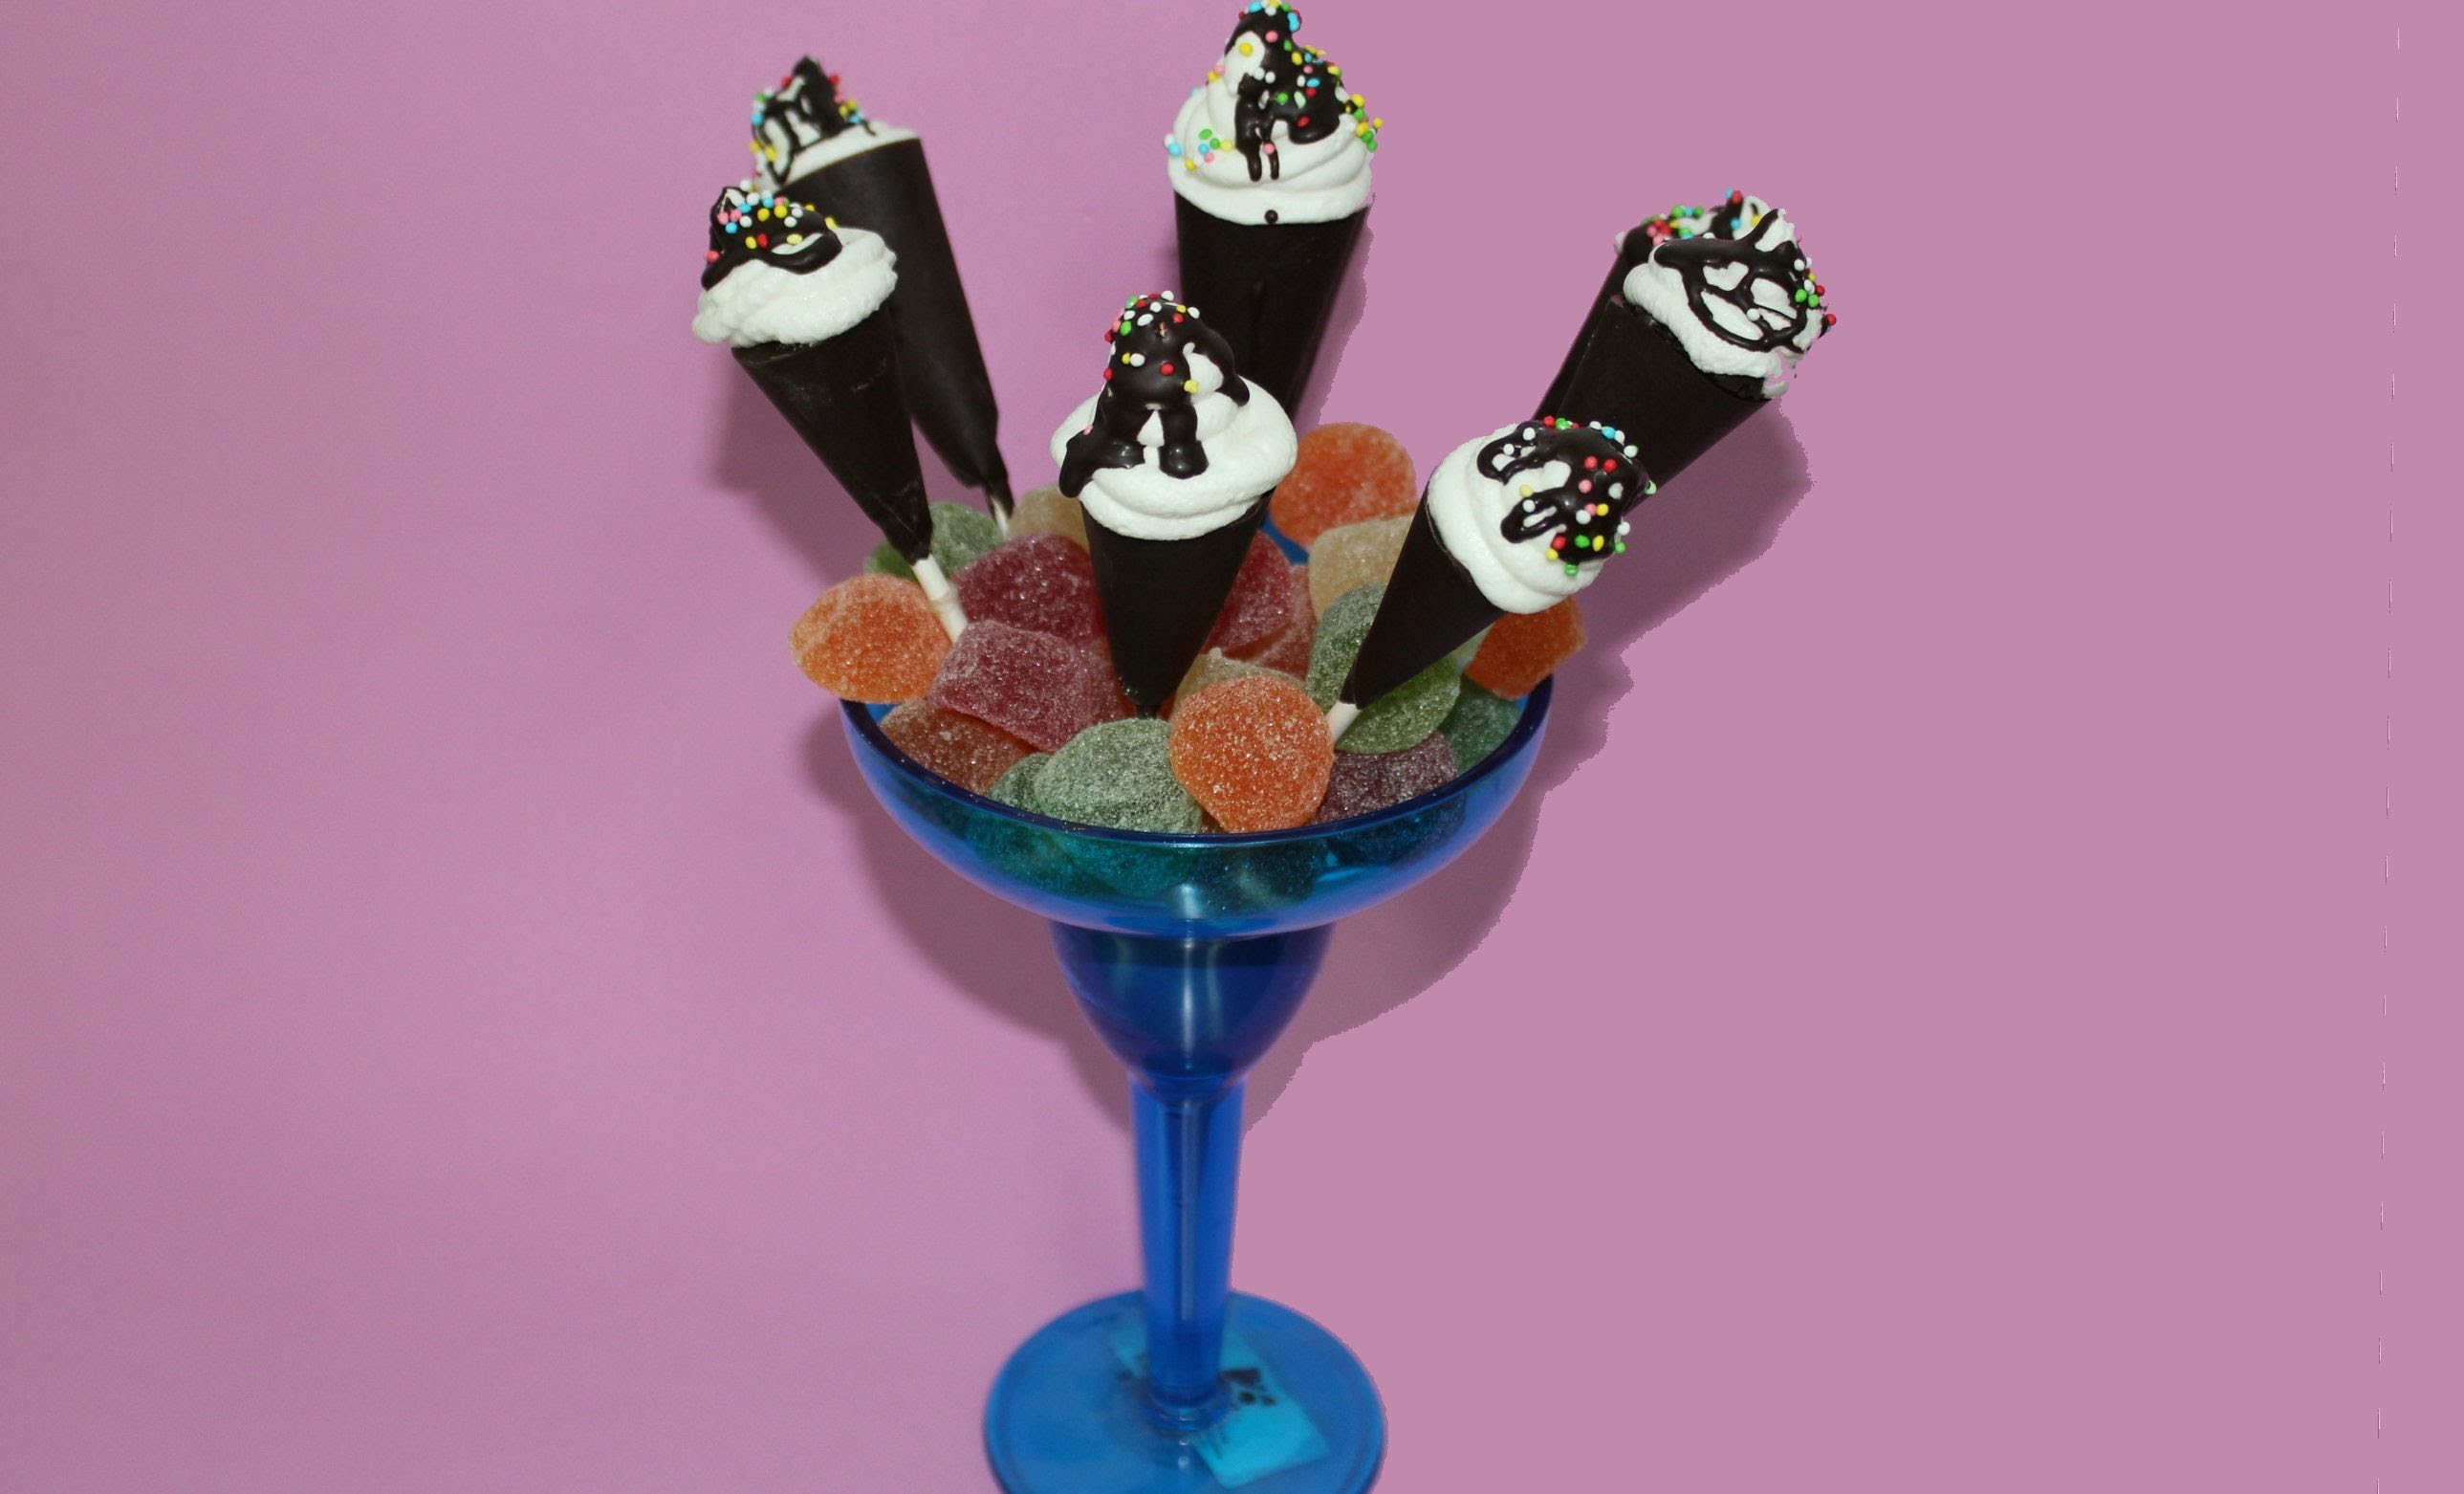 Cucuruchos de chocolate. chocolate ice cream cones